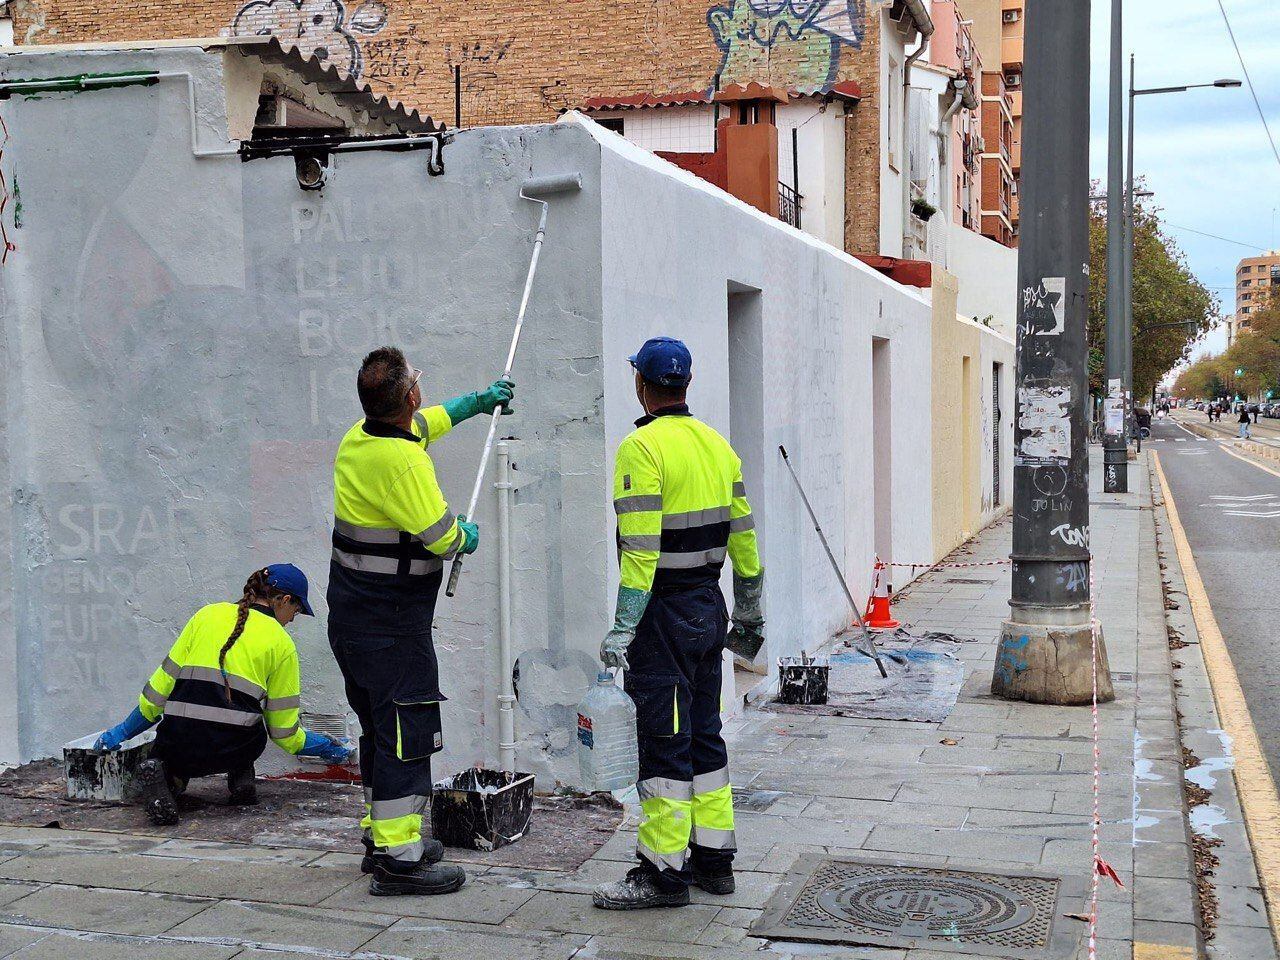 Trabajadores cubren el mural en apoyo a Palestina dibujado en Valencia. Imagen cedida por BDS.